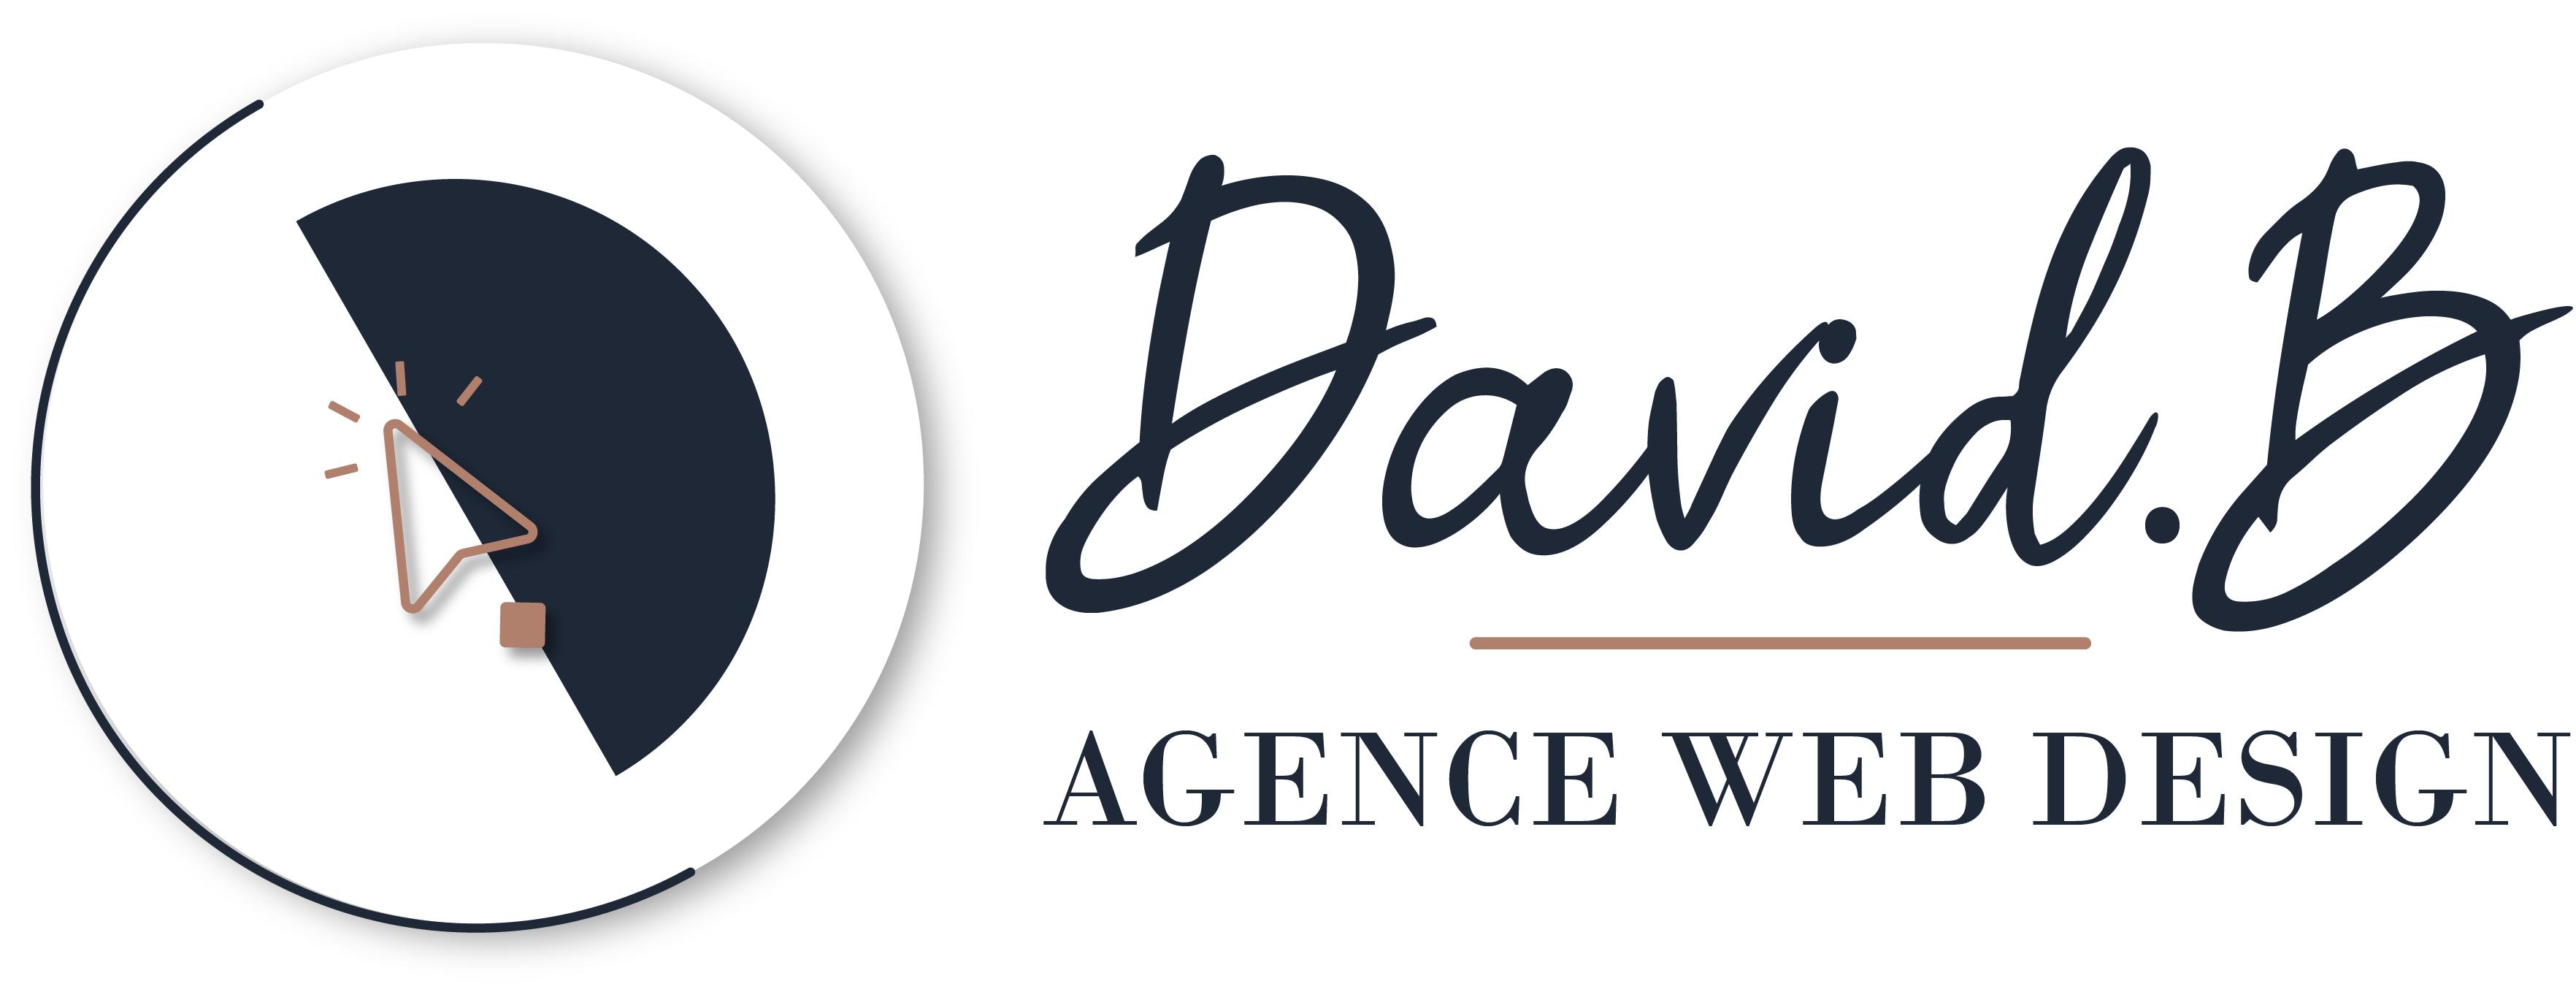 Agence Web Design DavidB